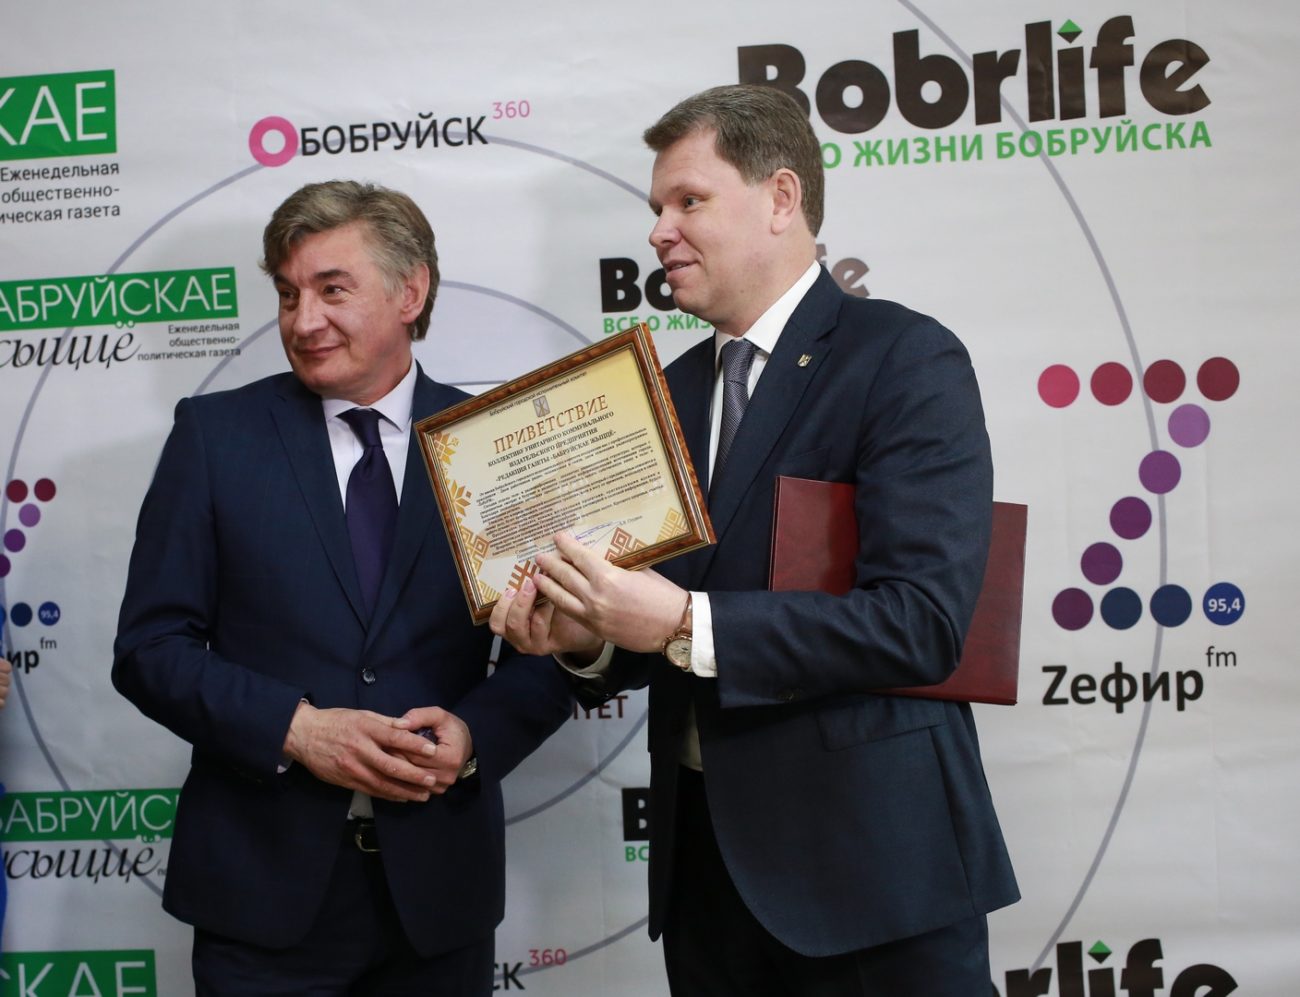 Мэр города Александр Студнев поздравил коллектив медиахолдинга «Бабруйскае жыццё» с Днем радио и Днем печати